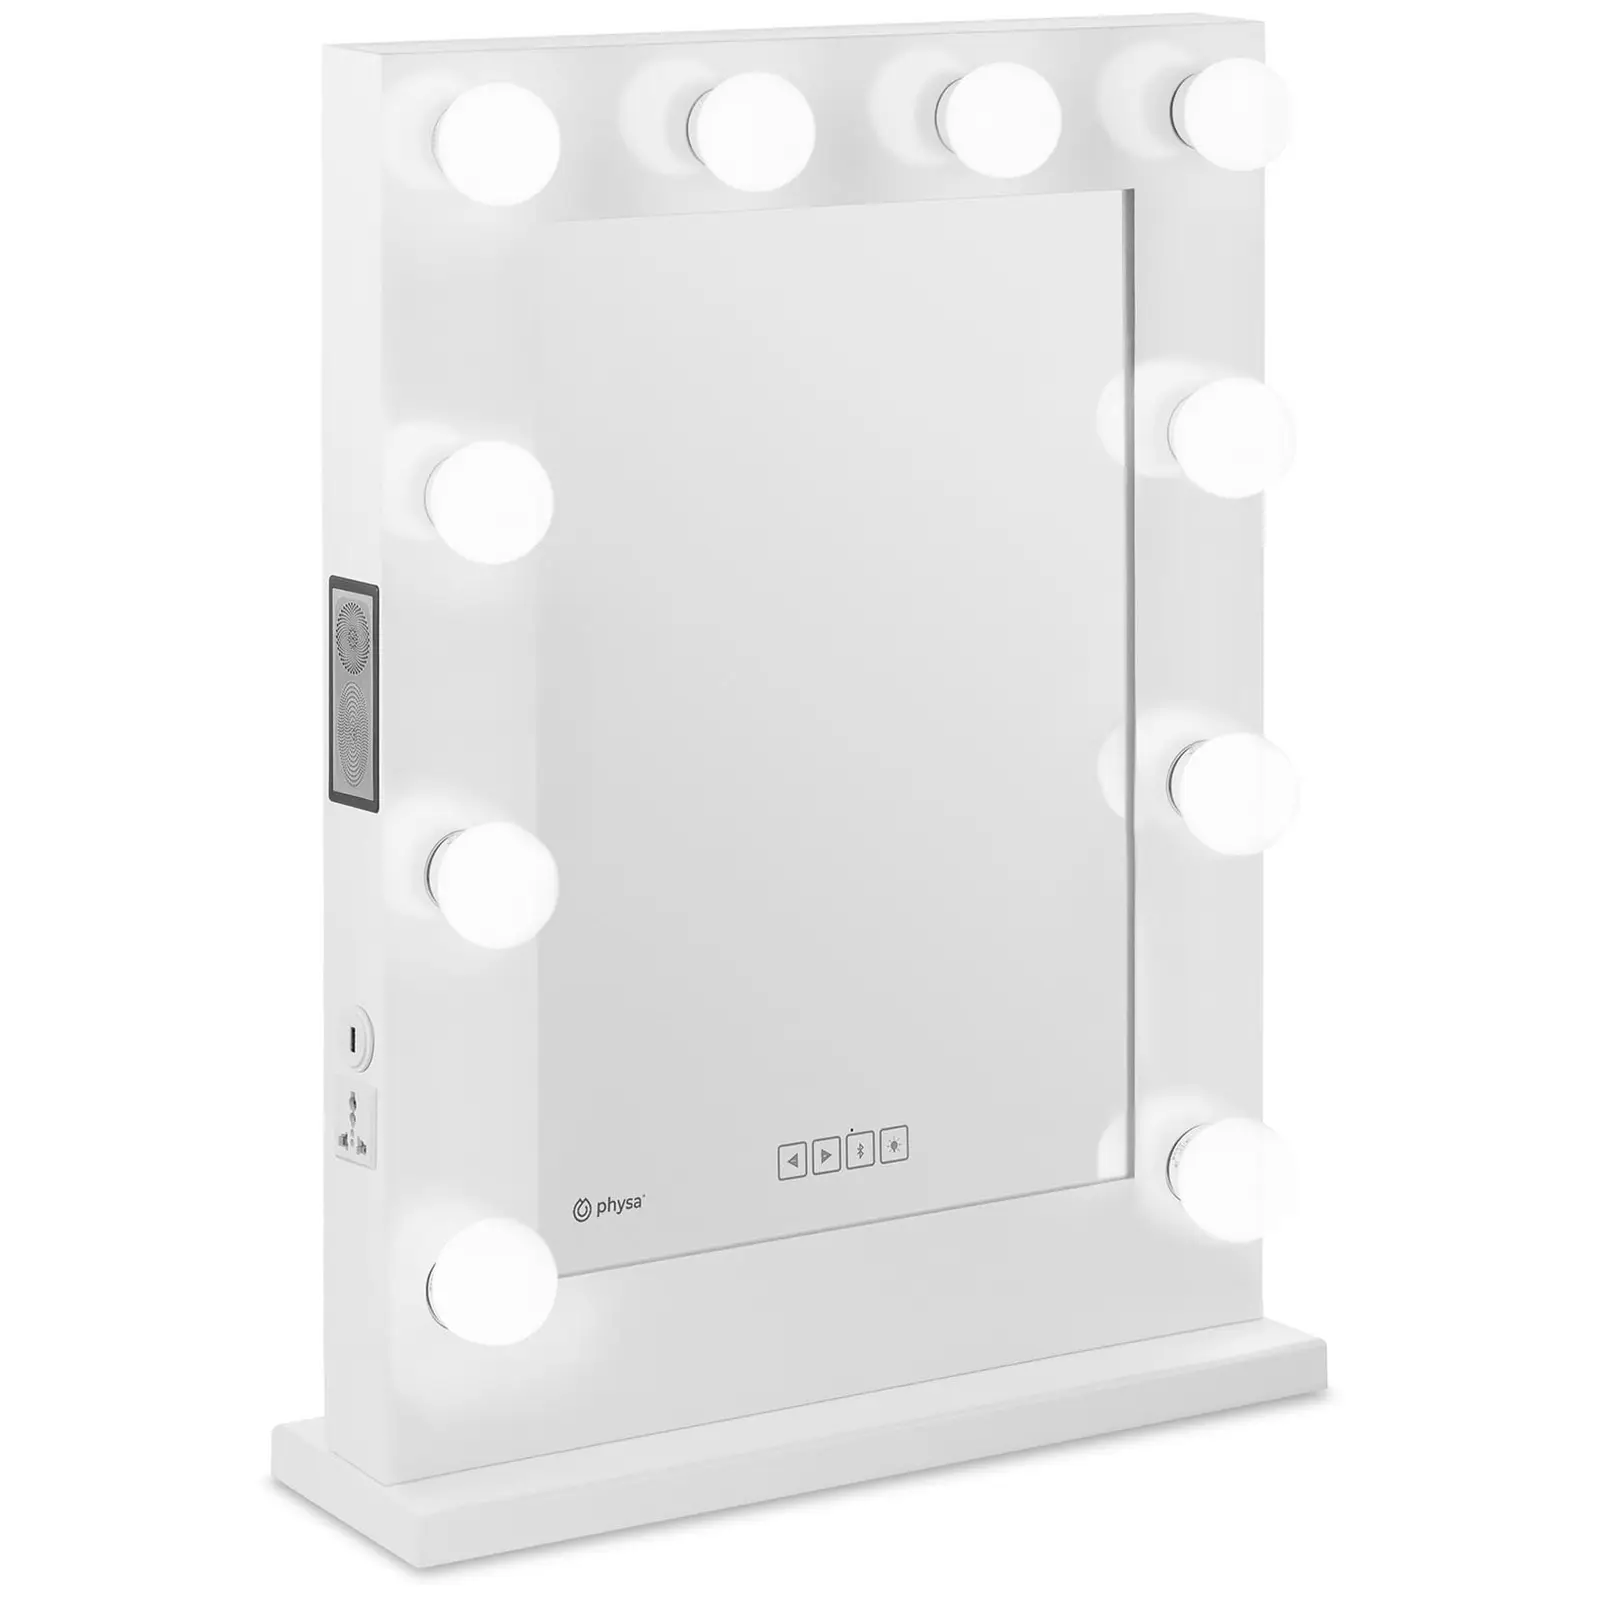 Hollywood-tükör - fehér - 10 LED - szögletes - hangszóró | physa